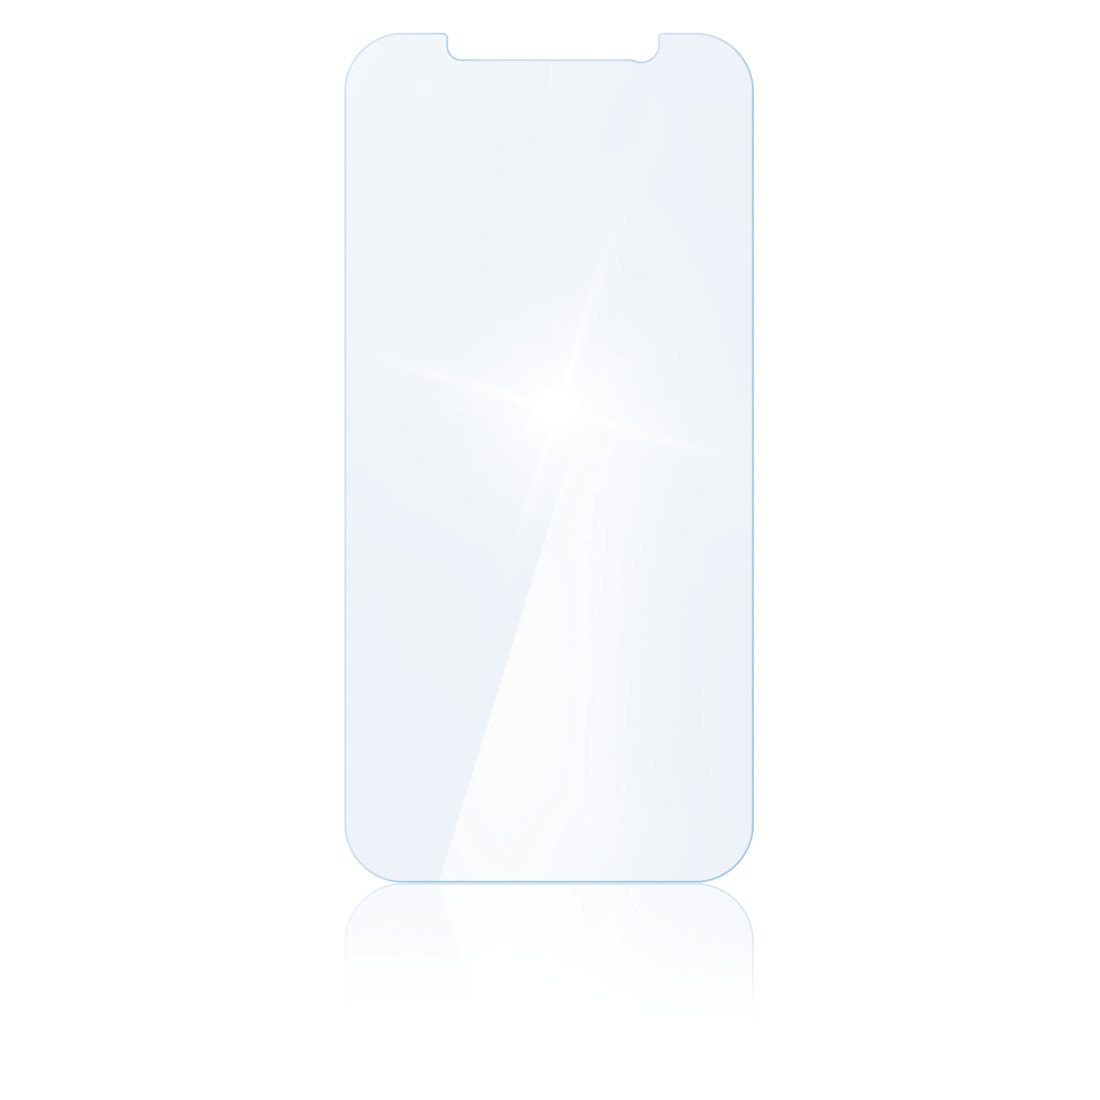 Hama 00188677 защитная пленка / стекло Прозрачная защитная пленка Мобильный телефон / смартфон Apple 1 шт